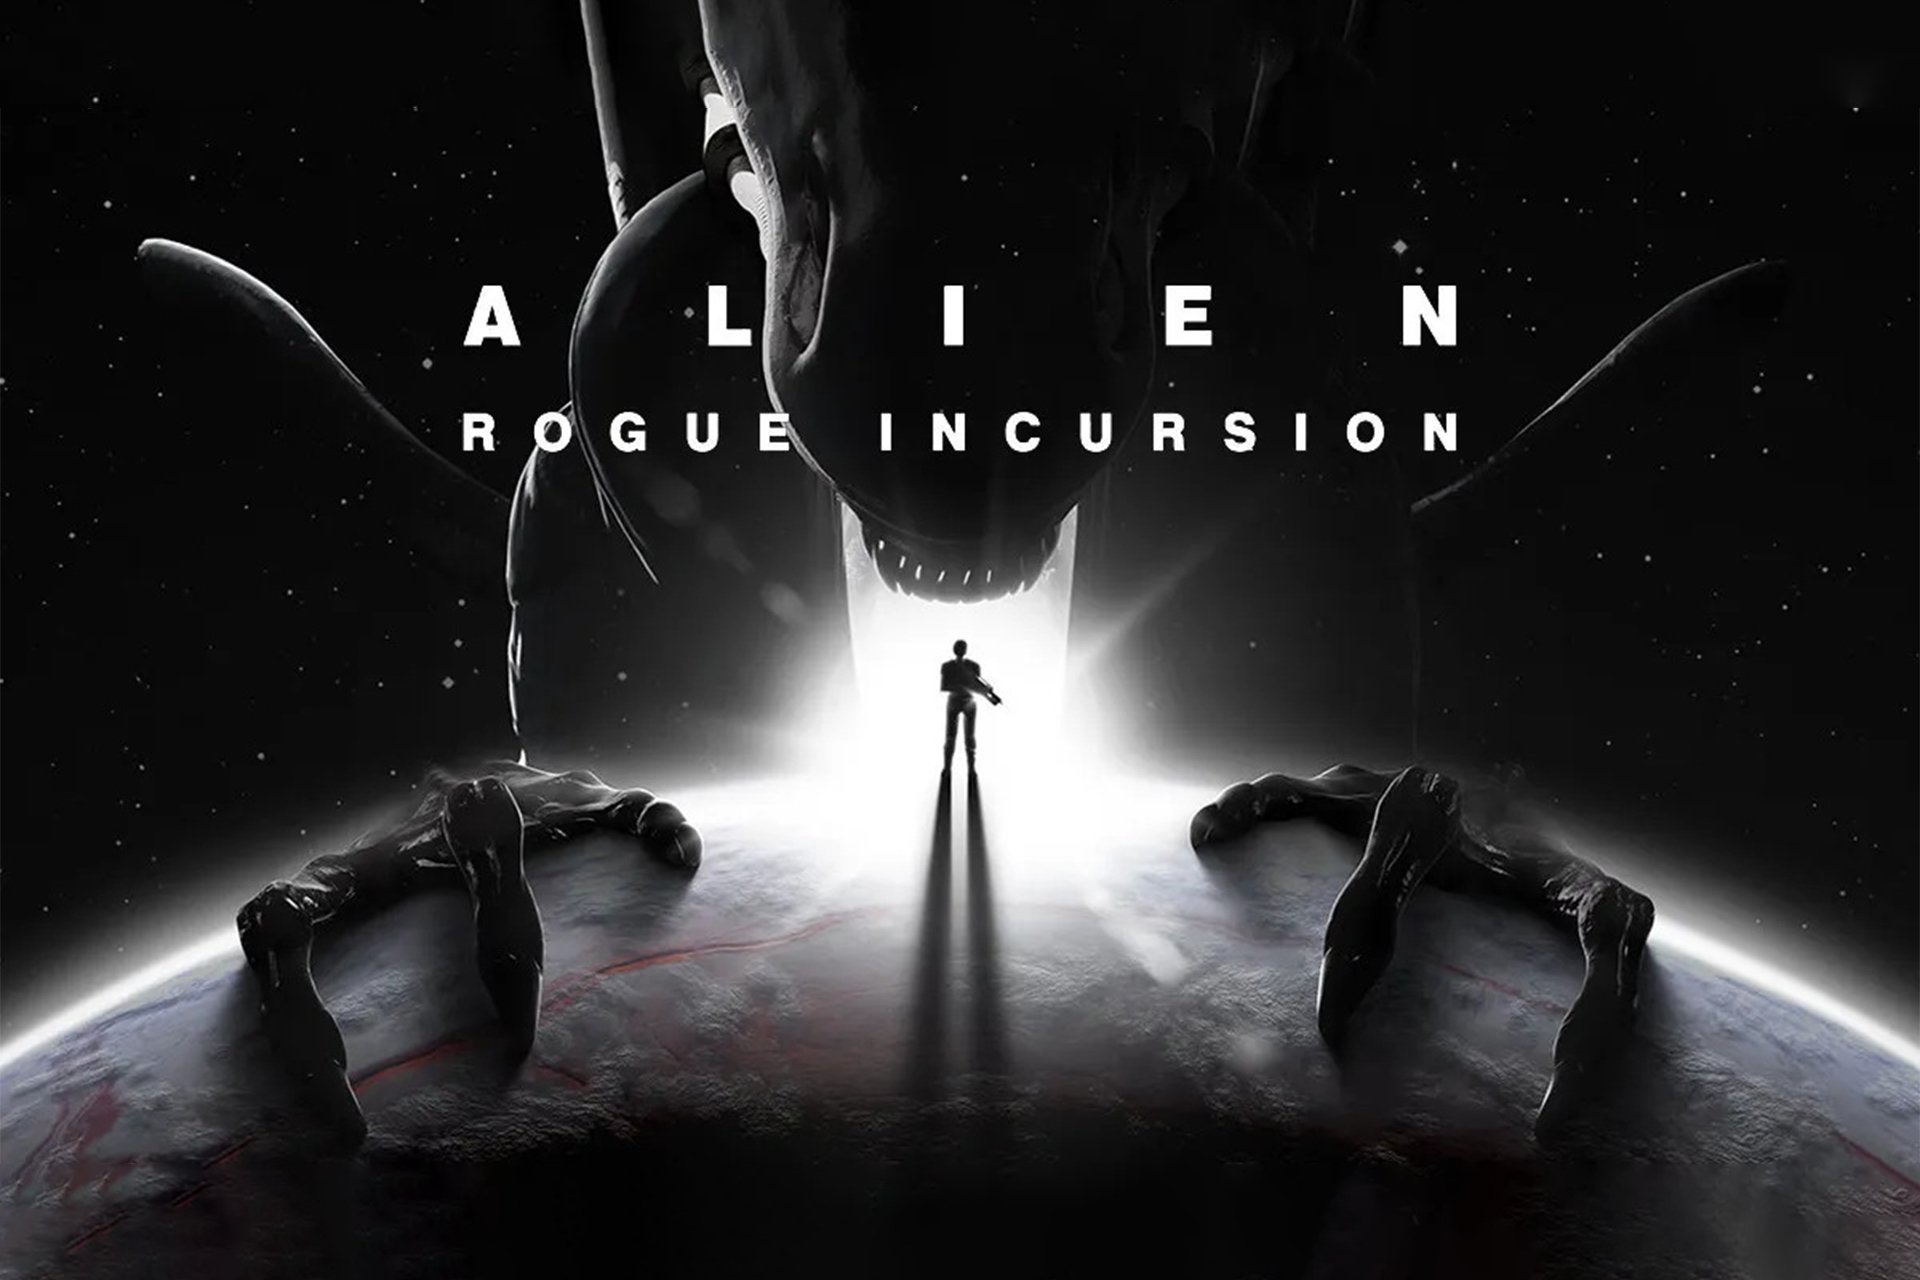 Alien-Rogue-Incursion